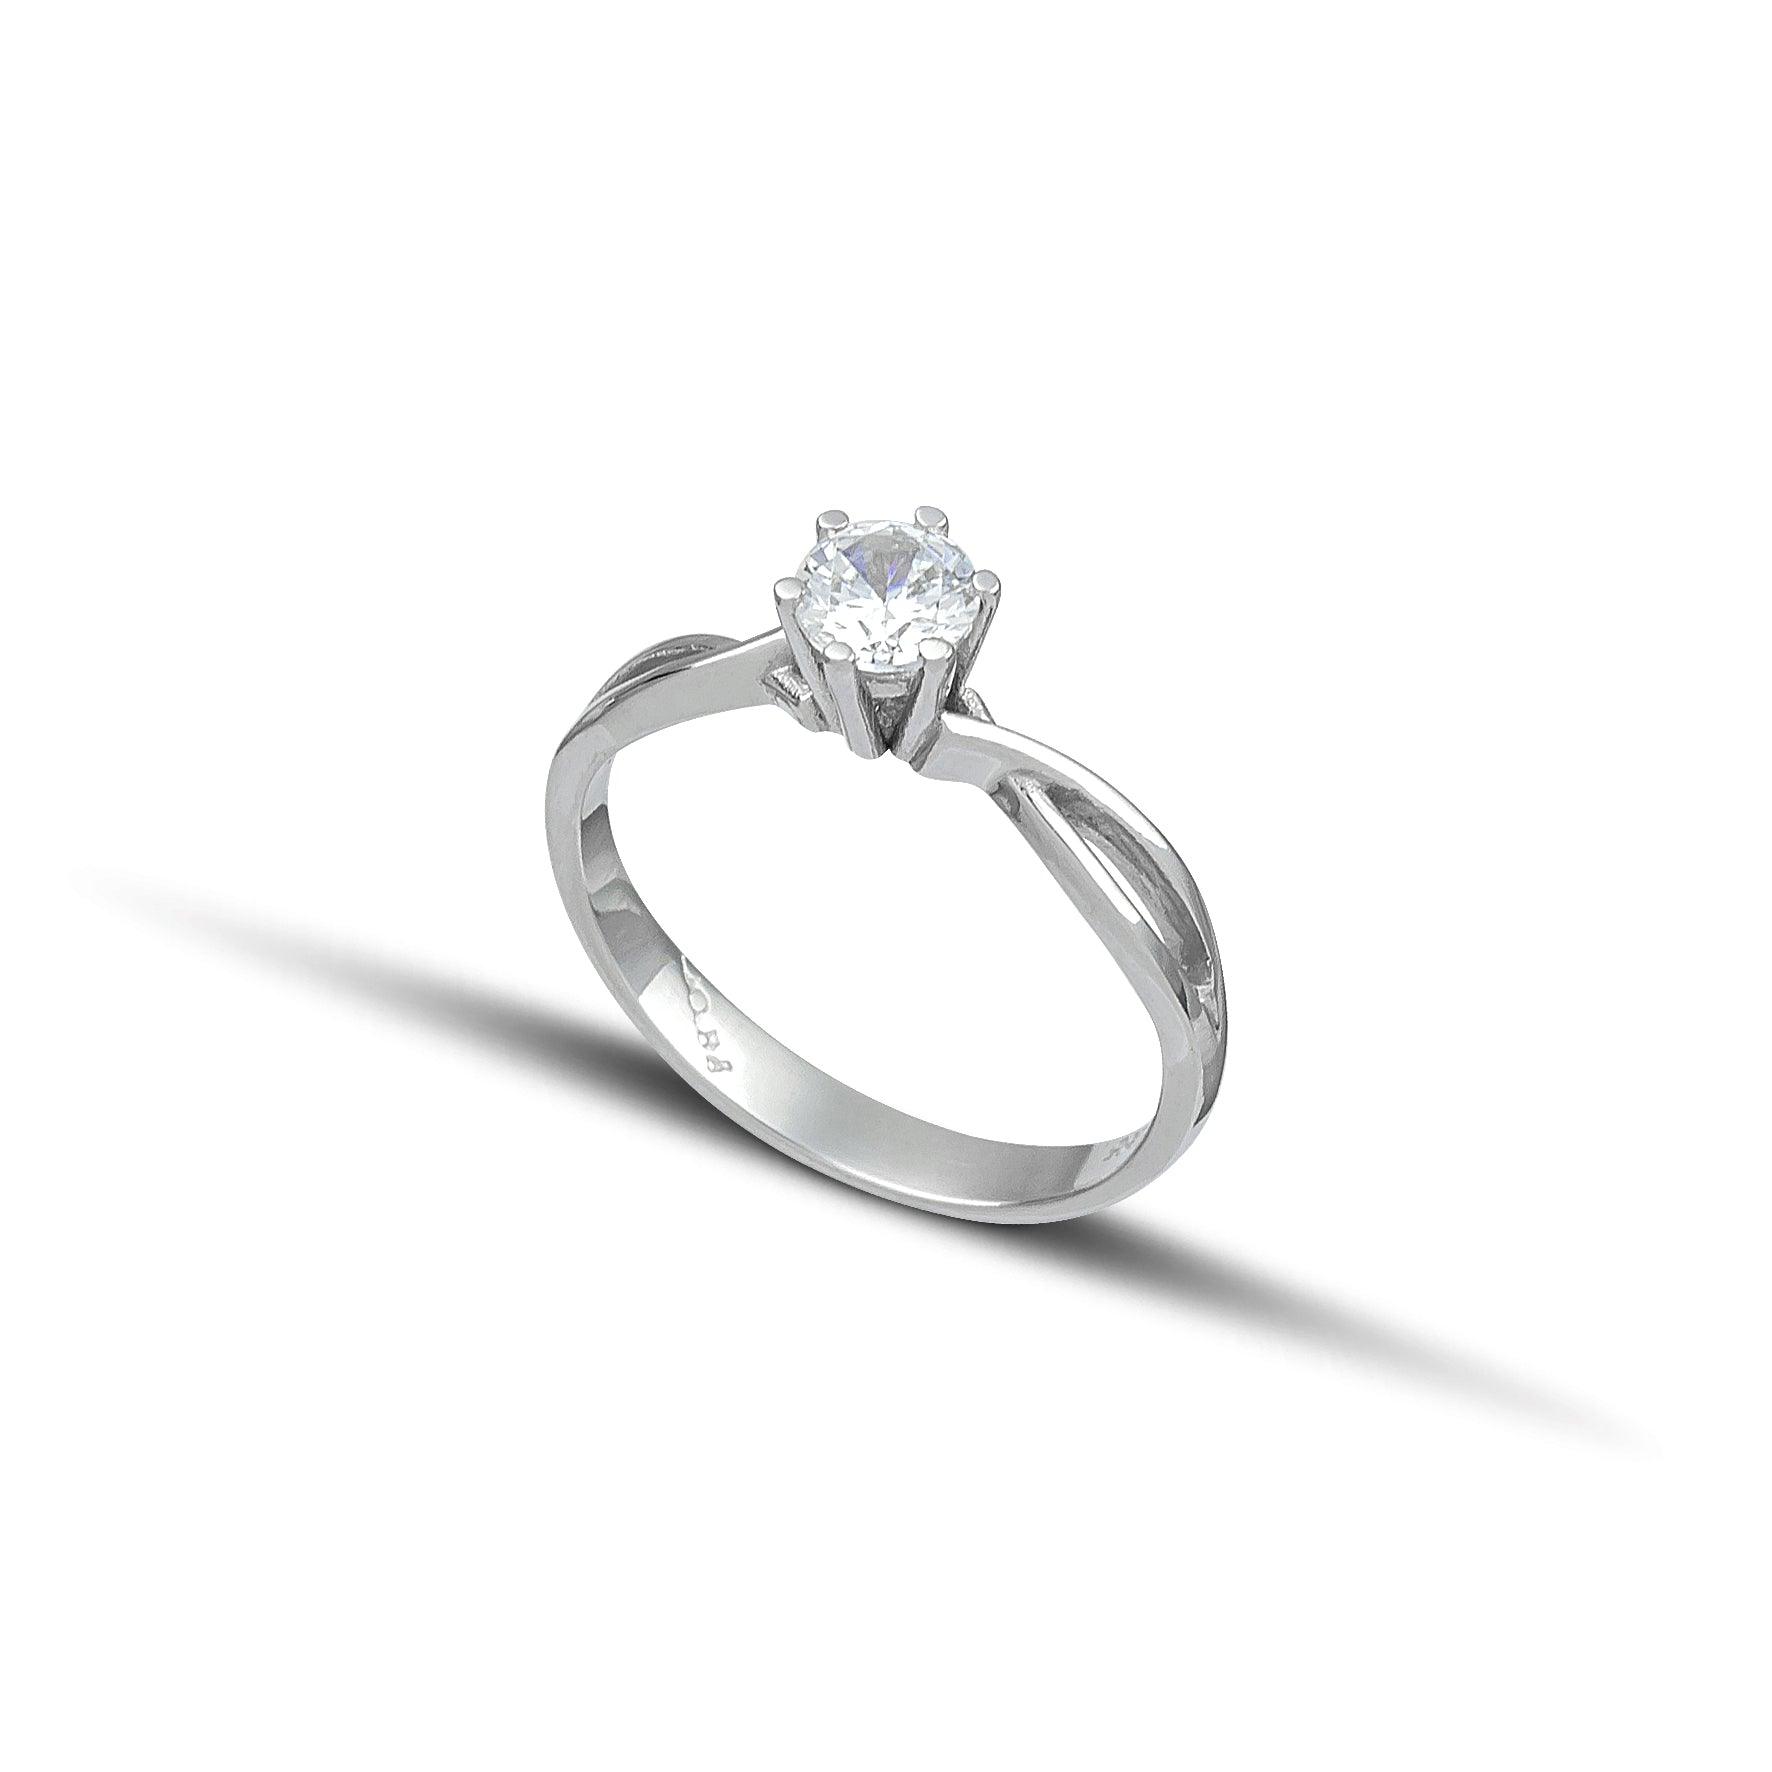 Μονόπετρο δαχτυλίδι γάμου με διαμάντι κατασκευασμένο από λευκόχρυσο, με διαγώνια πλέξη και καστόνι με έξι δόντια. 